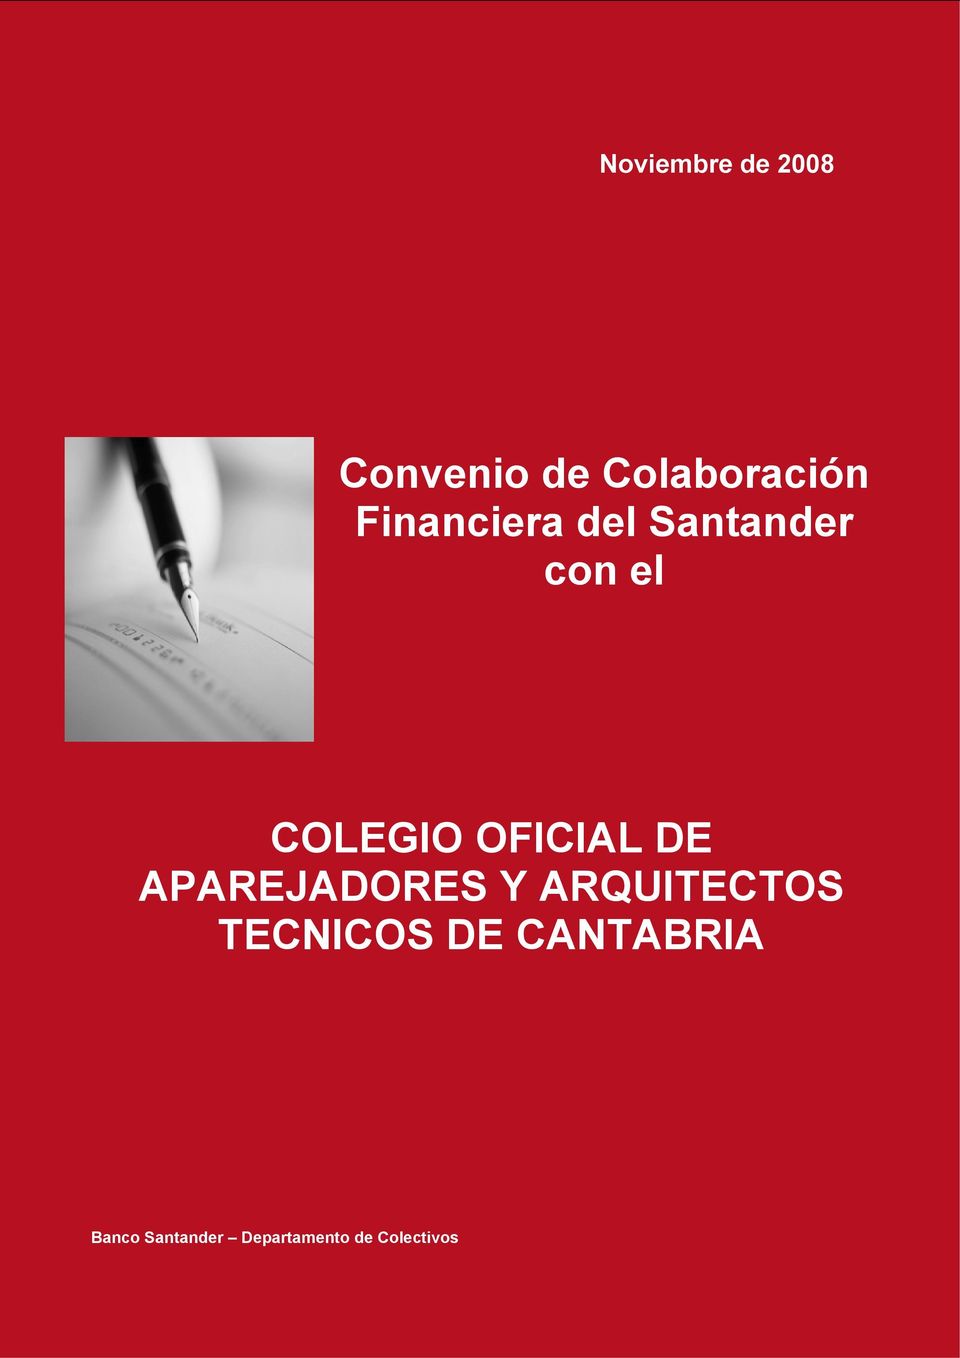 ARQUITECTOS TECNICOS DE CANTABRIA Banco Santander